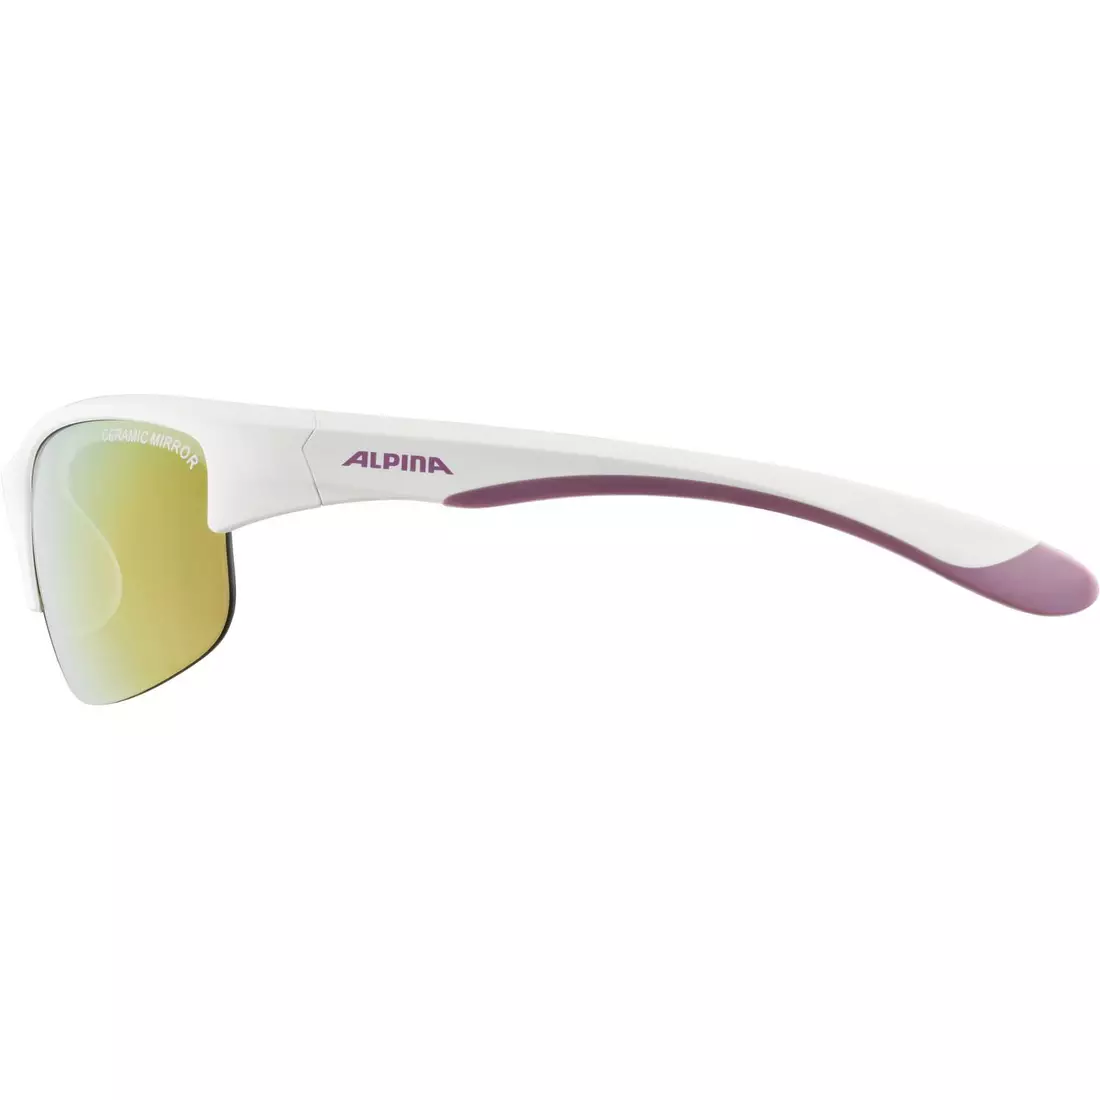 ALPINA JUNIOR FLEXXY YOUTH HR Kinder Fahrrad-/Sportbrille, white-purple matt